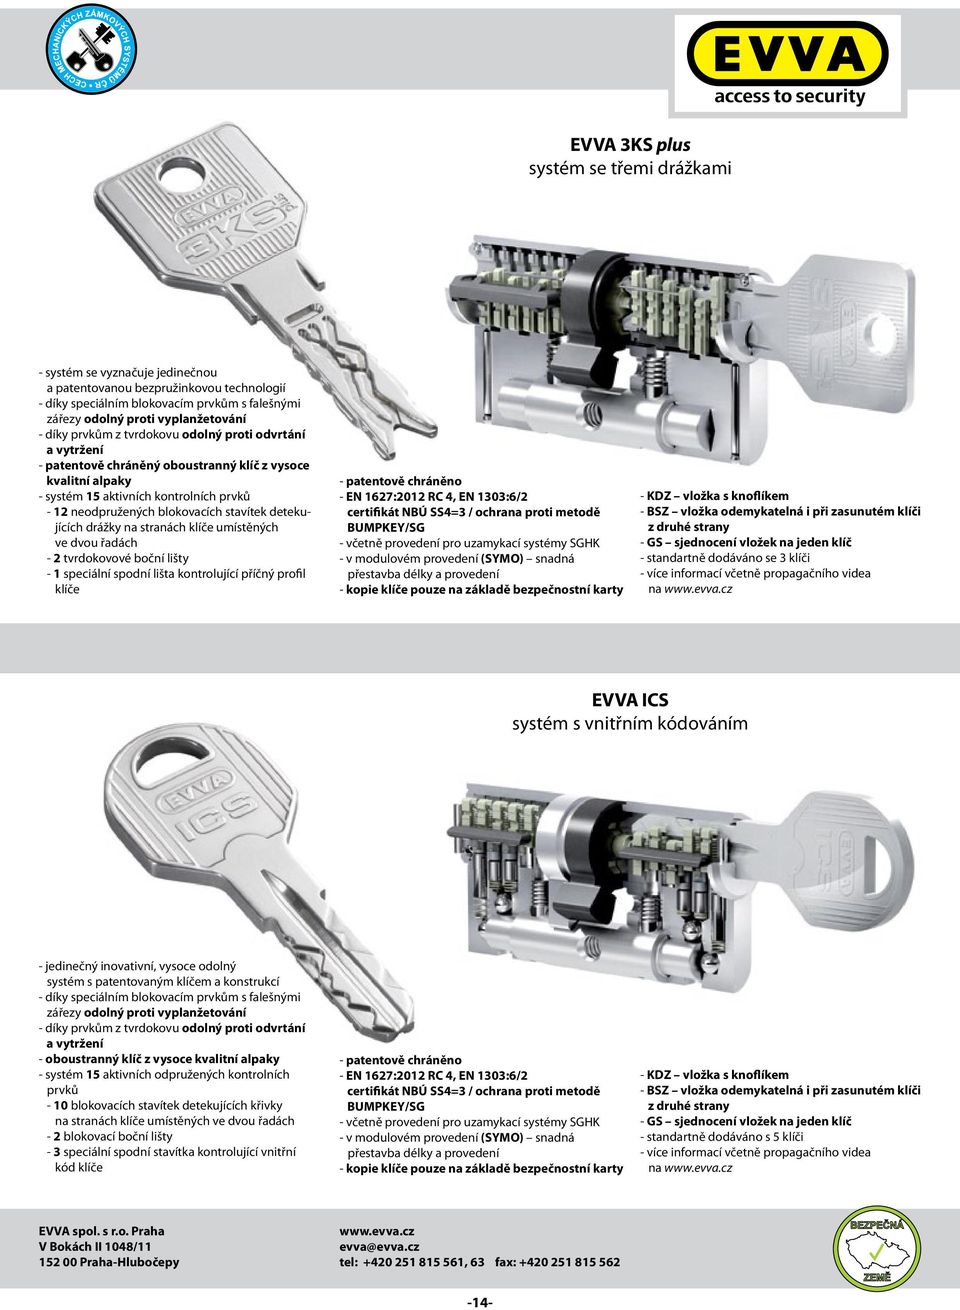 detekujících drážky na stranách klíče umístěných ve dvou řadách - 2 tvrdokovové boční lišty - 1 speciální spodní lišta kontrolující příčný profil klíče - patentově chráněno - EN 1627:2012 RC 4, EN